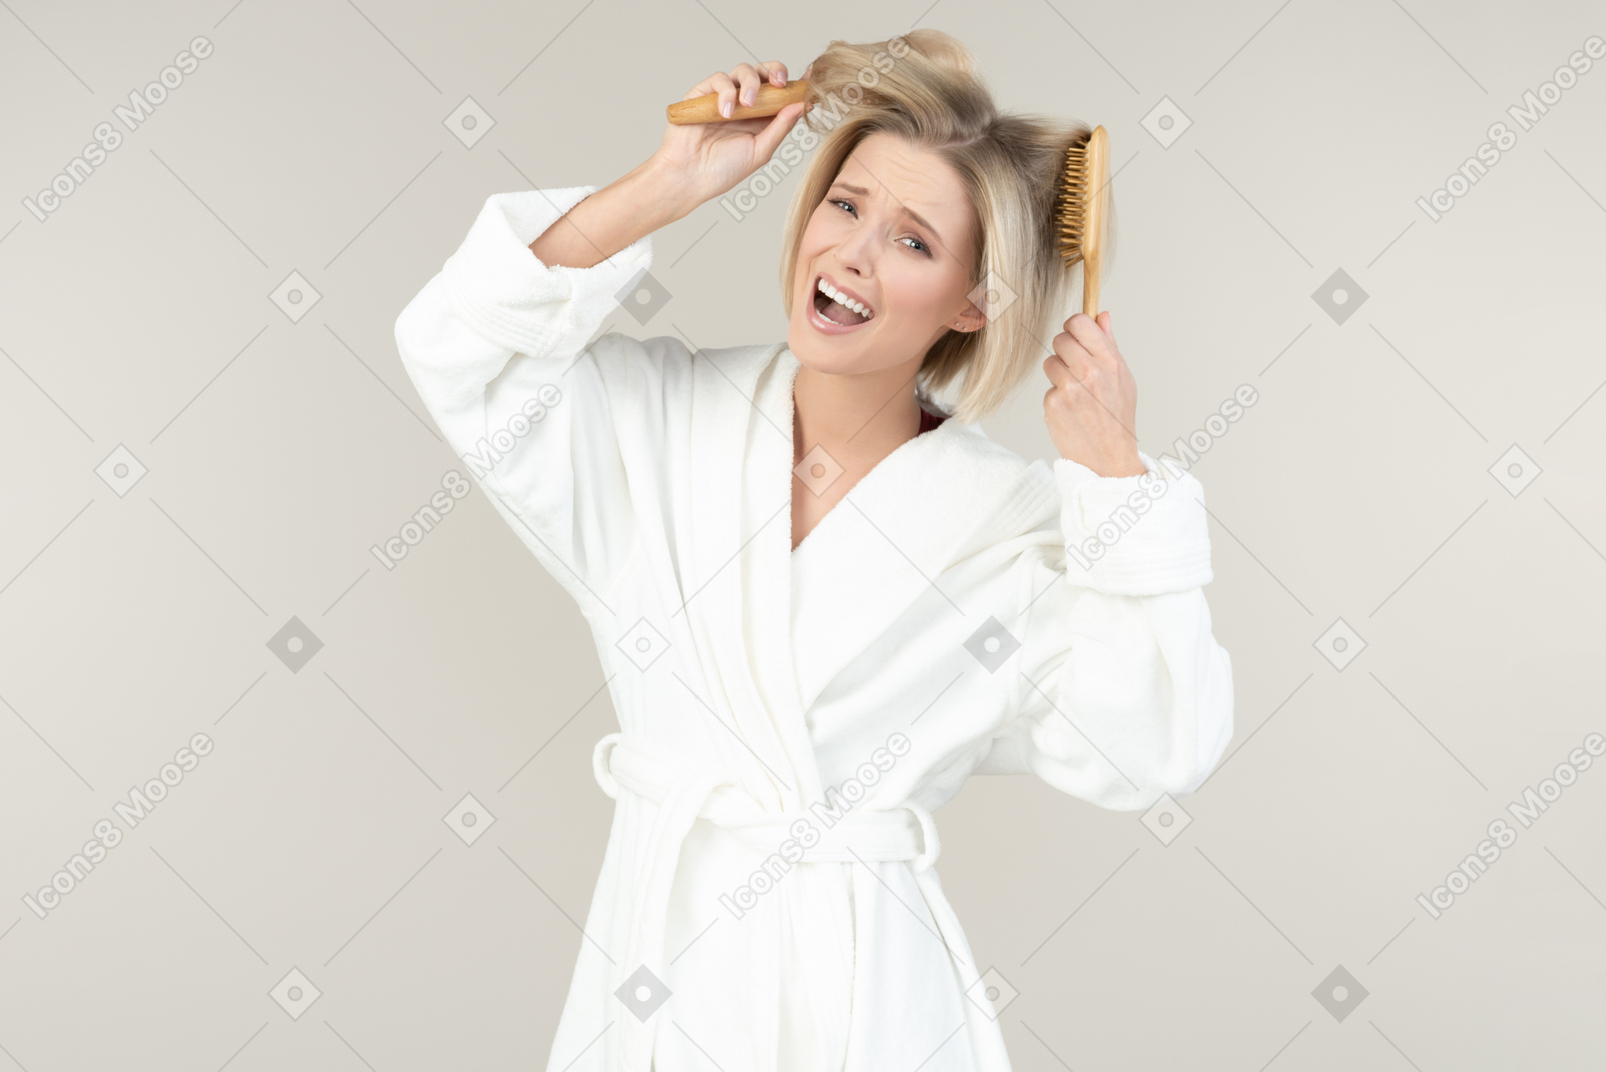 Junge blonde frau in einem weißen bademantel, der mit allen arten toilettenartikeln aufwirft